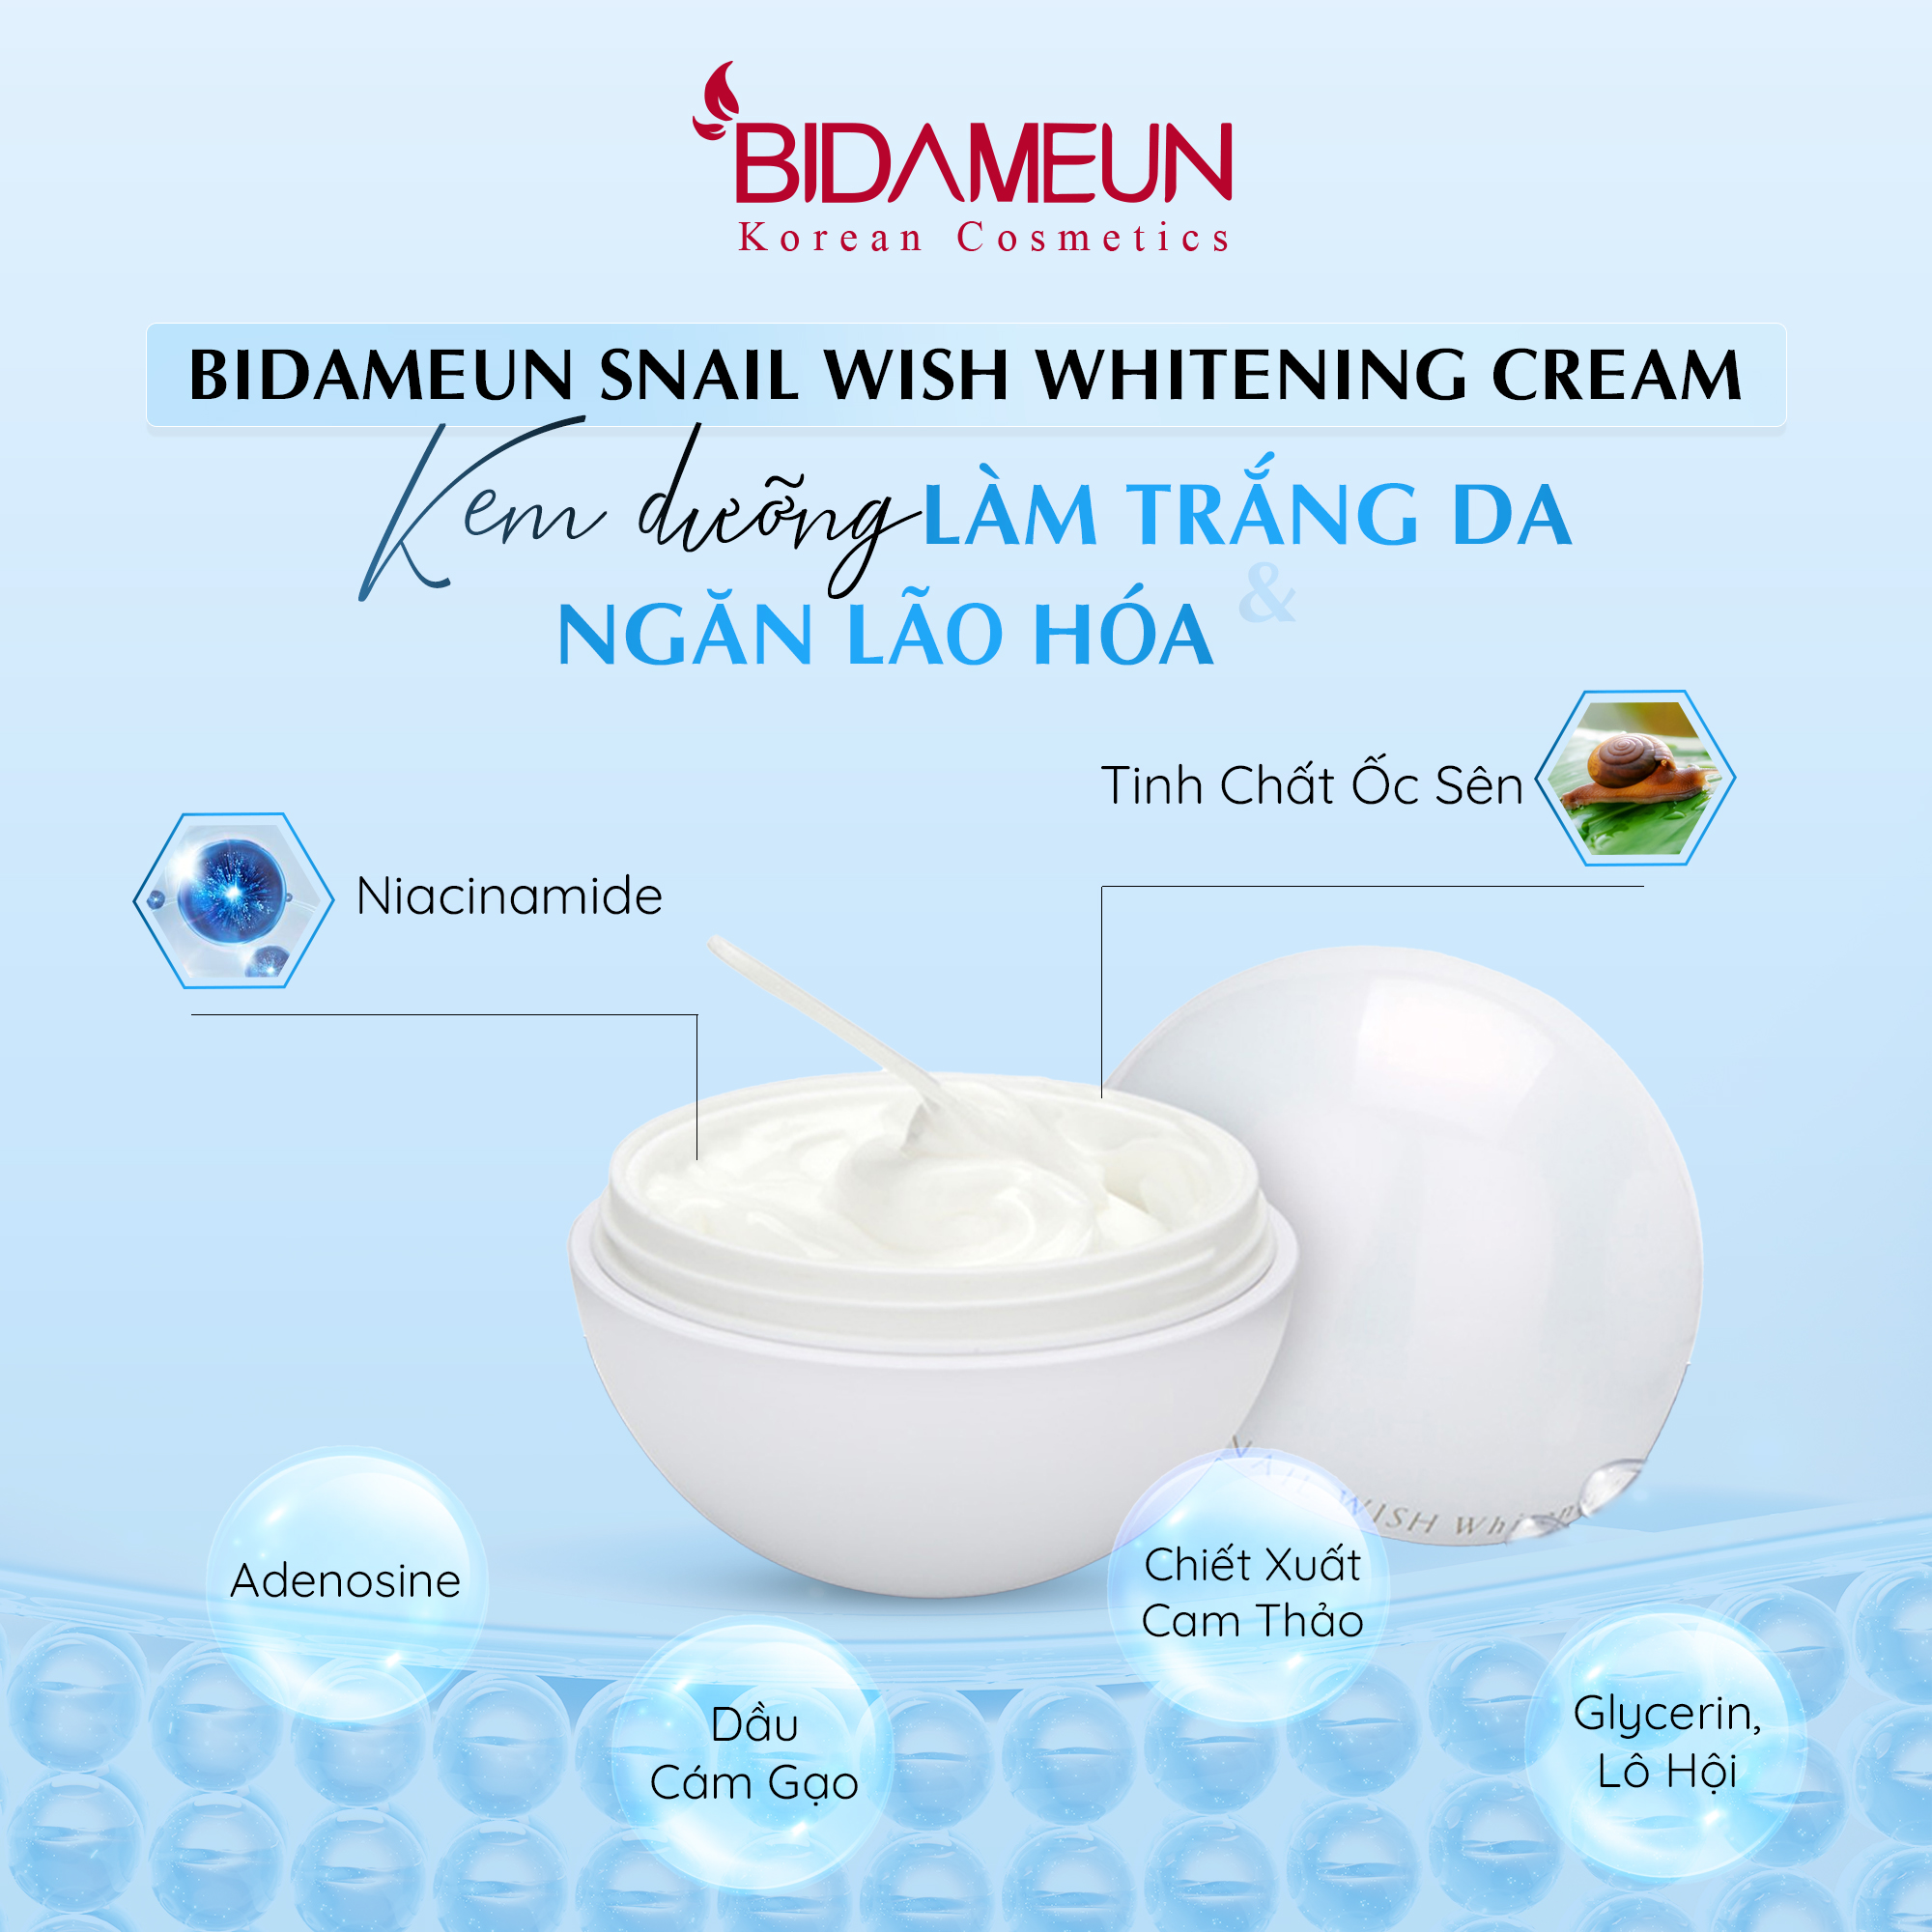 Bidameun Snail Wish Whitening Cream